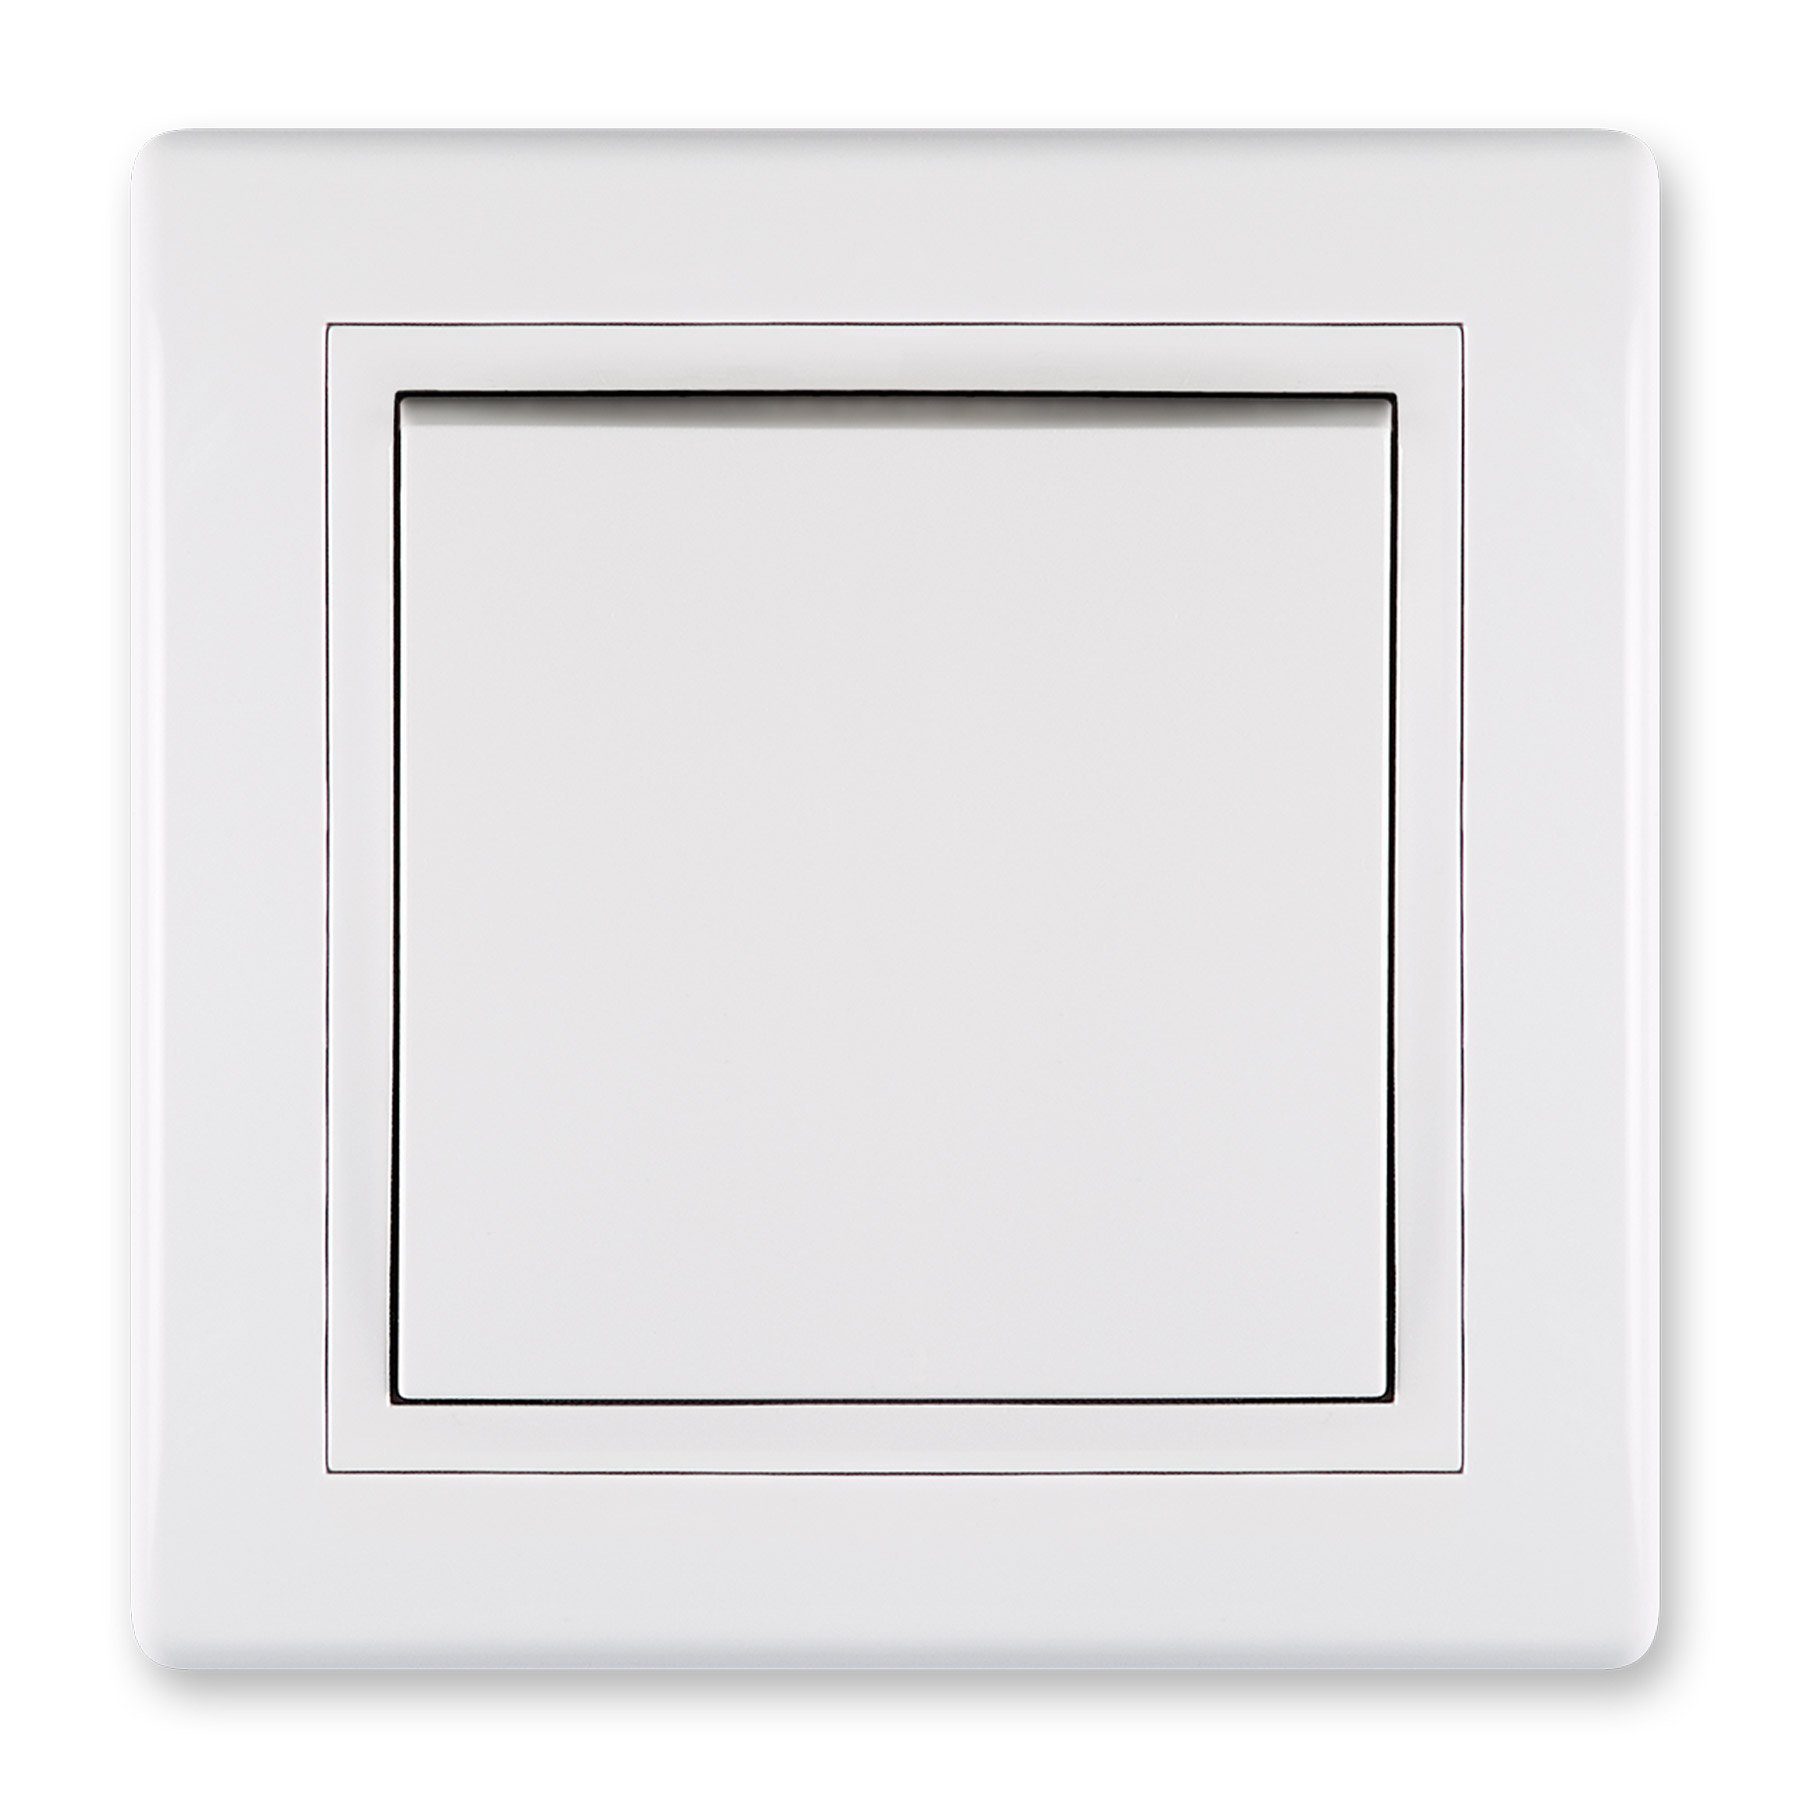 Unterputz-Schalter Glimmlampe Aling (Packung) Weiß Line Conel Lichtschalter Prestige ohne